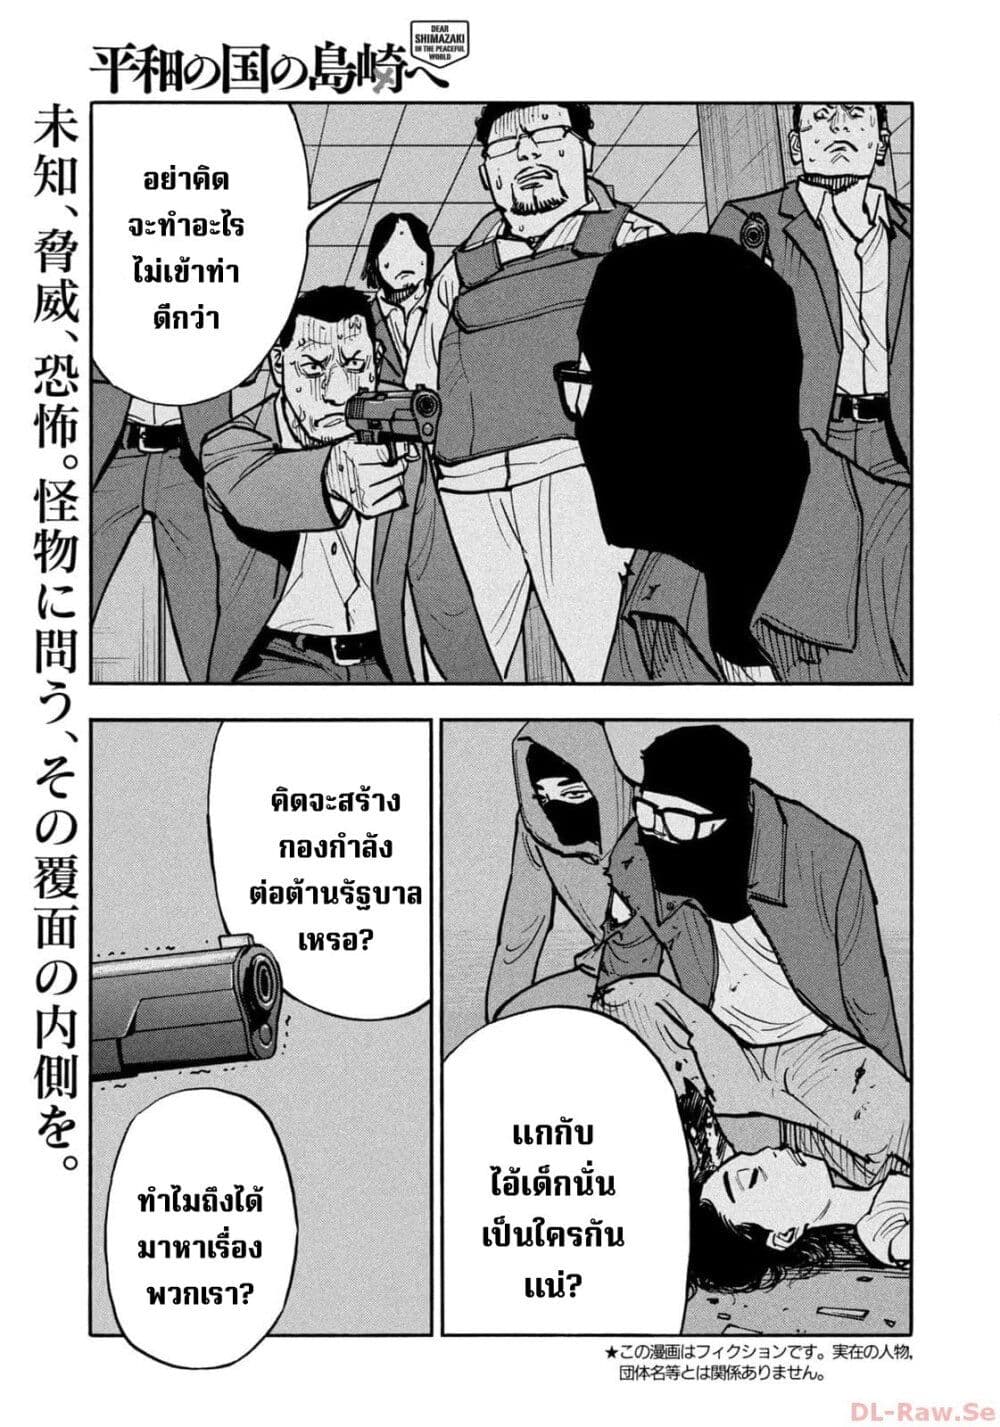 อ่านมังงะ Heiwa no Kuni no Shimazaki e ตอนที่ 48/0.jpg